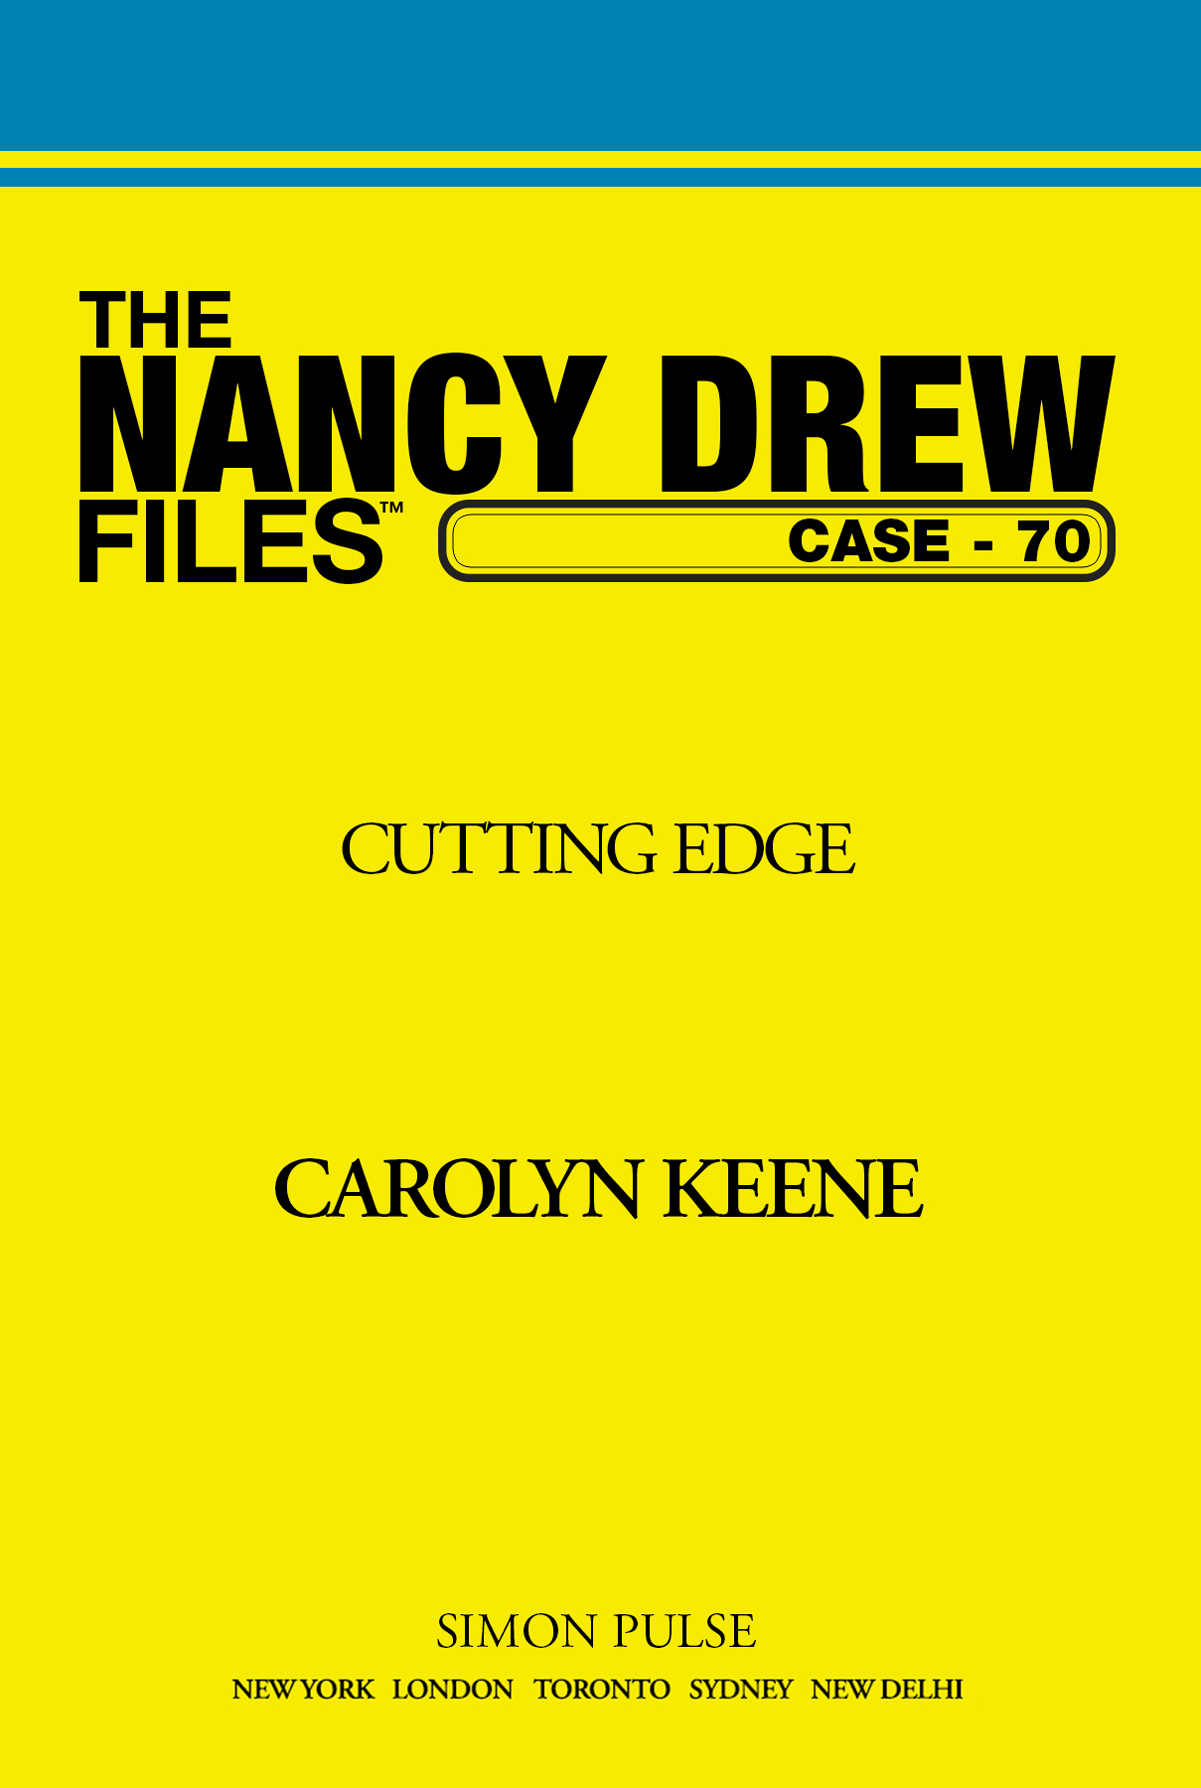 Cutting Edge by Carolyn Keene